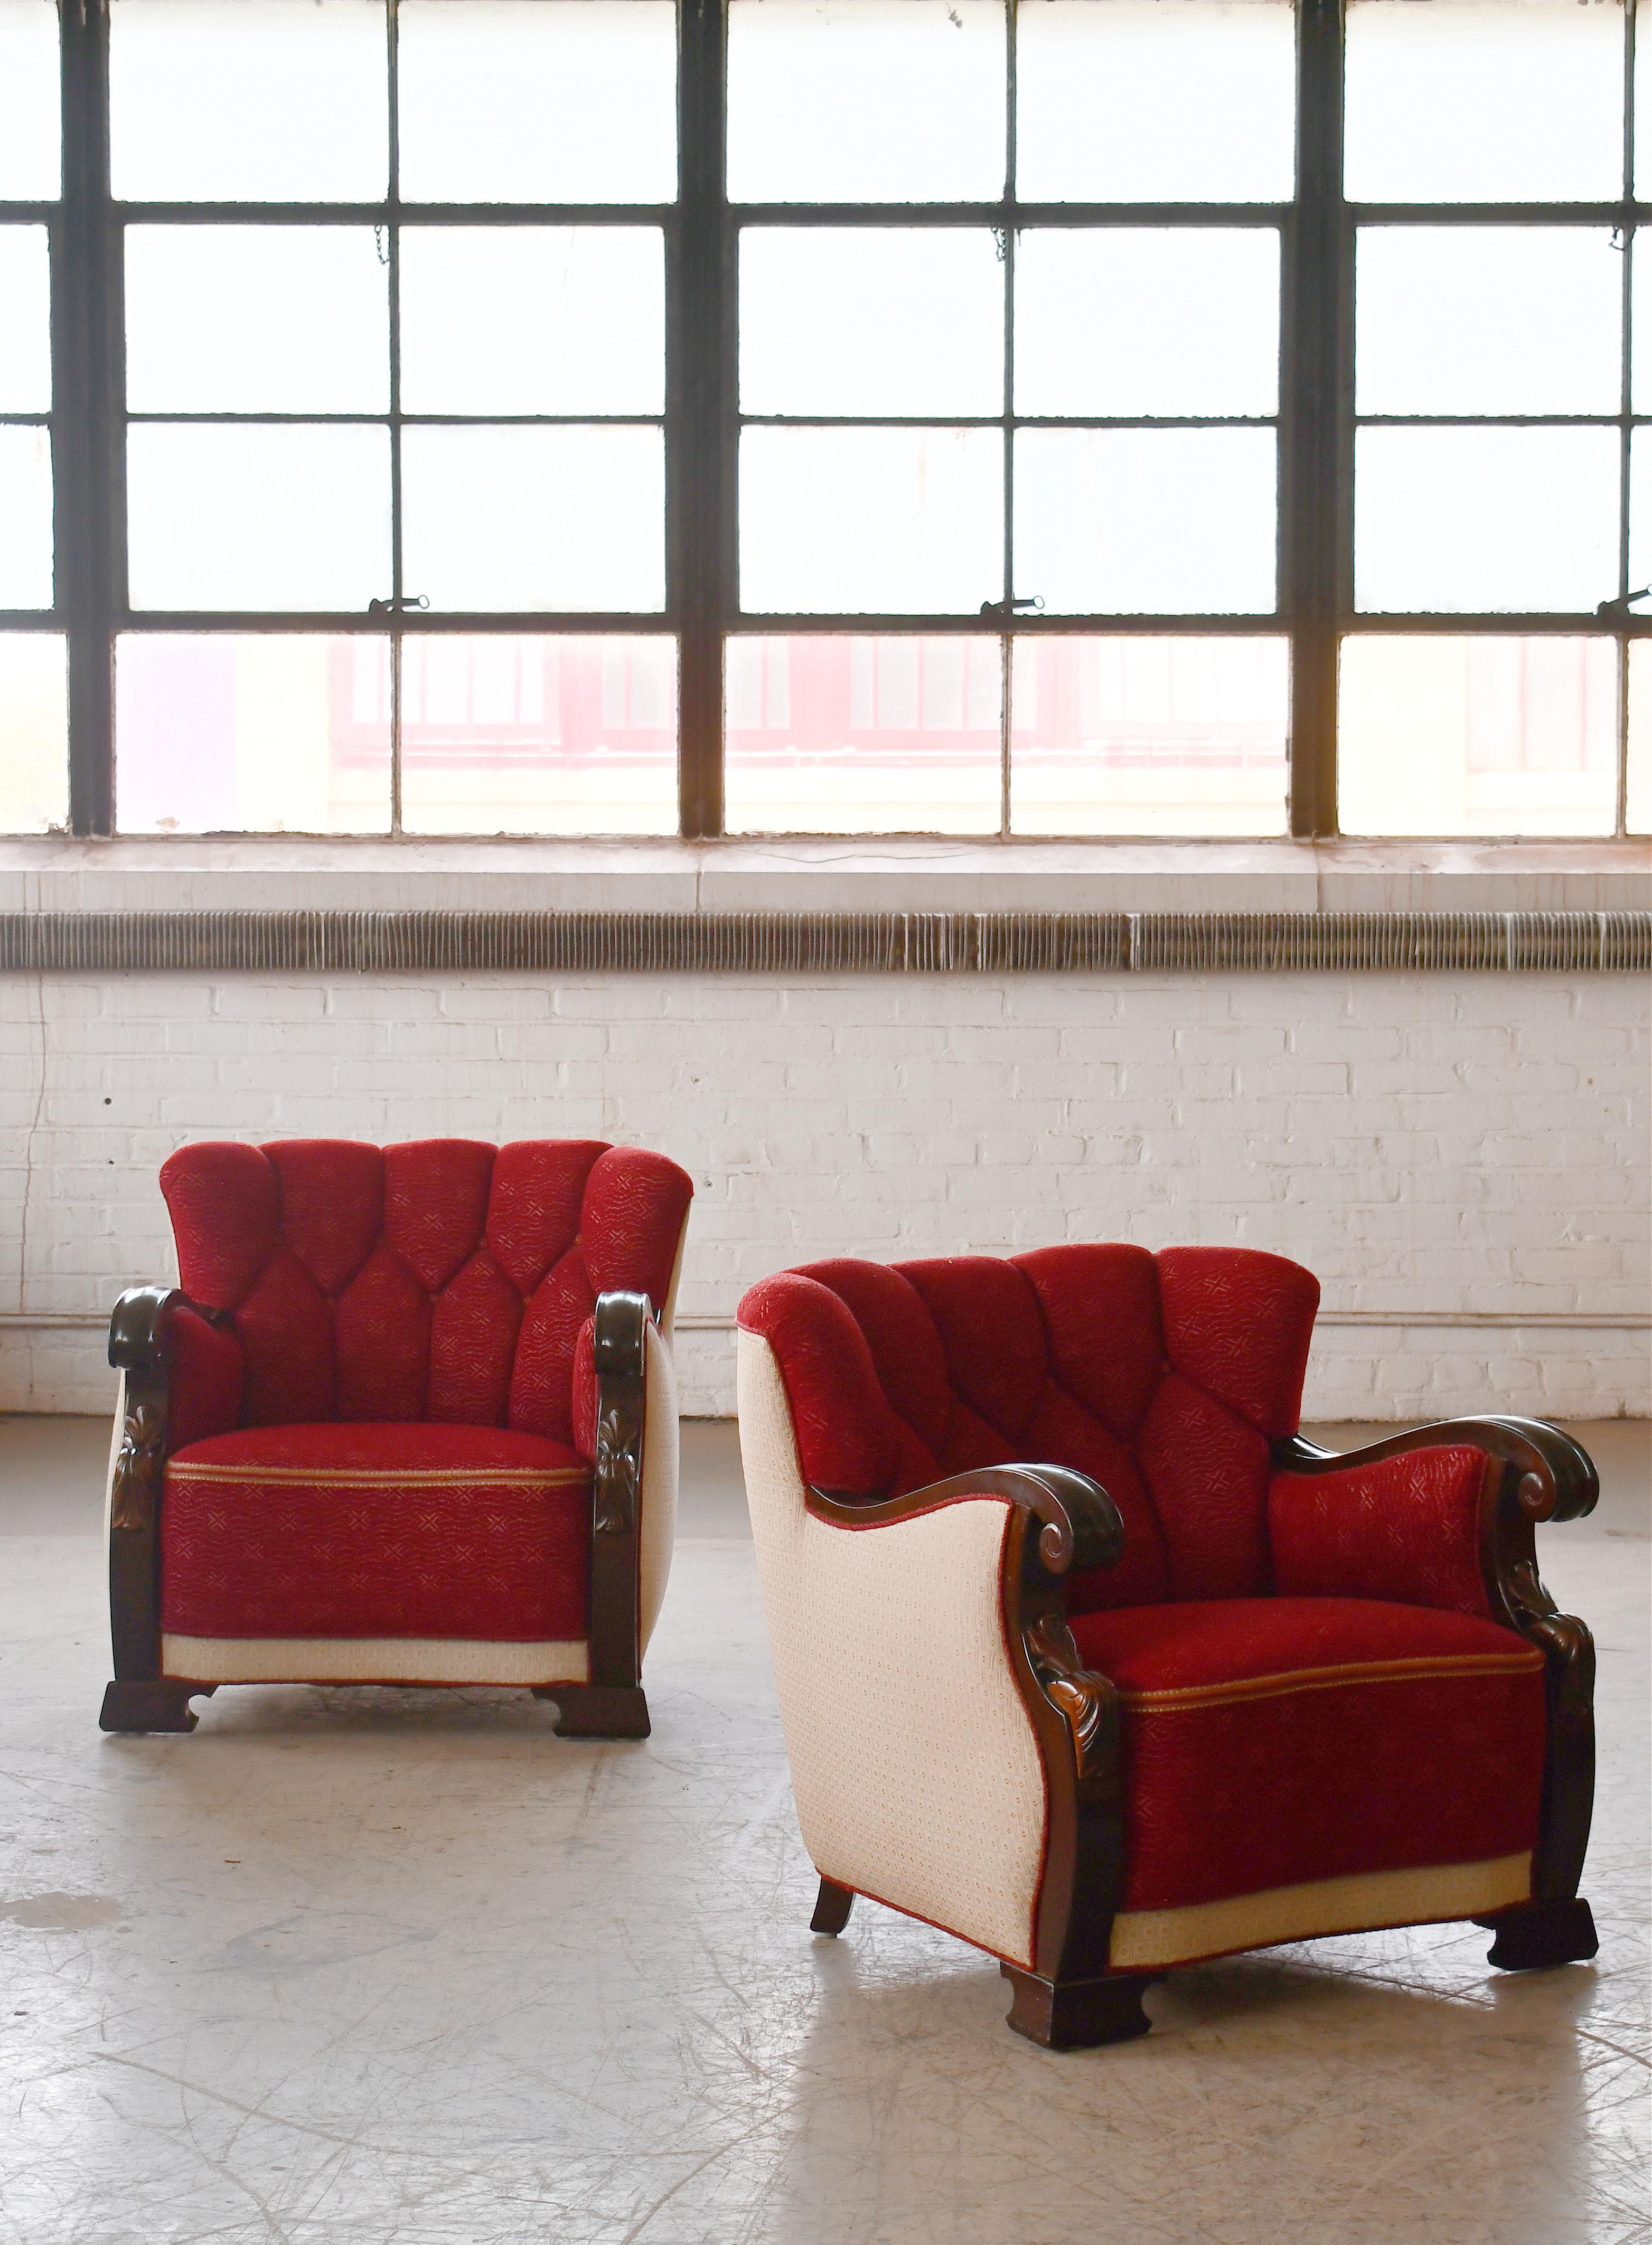 Außergewöhnliche ultra cool und bequem mittelgroße Art Deco Club Stühle in Dänemark wahrscheinlich um Mitte der 1930er Jahre gemacht. Sehr seltener Fund. Wir lieben die niedrigen und breiten Proportionen sowie die diamantgemusterte Rückenlehne und